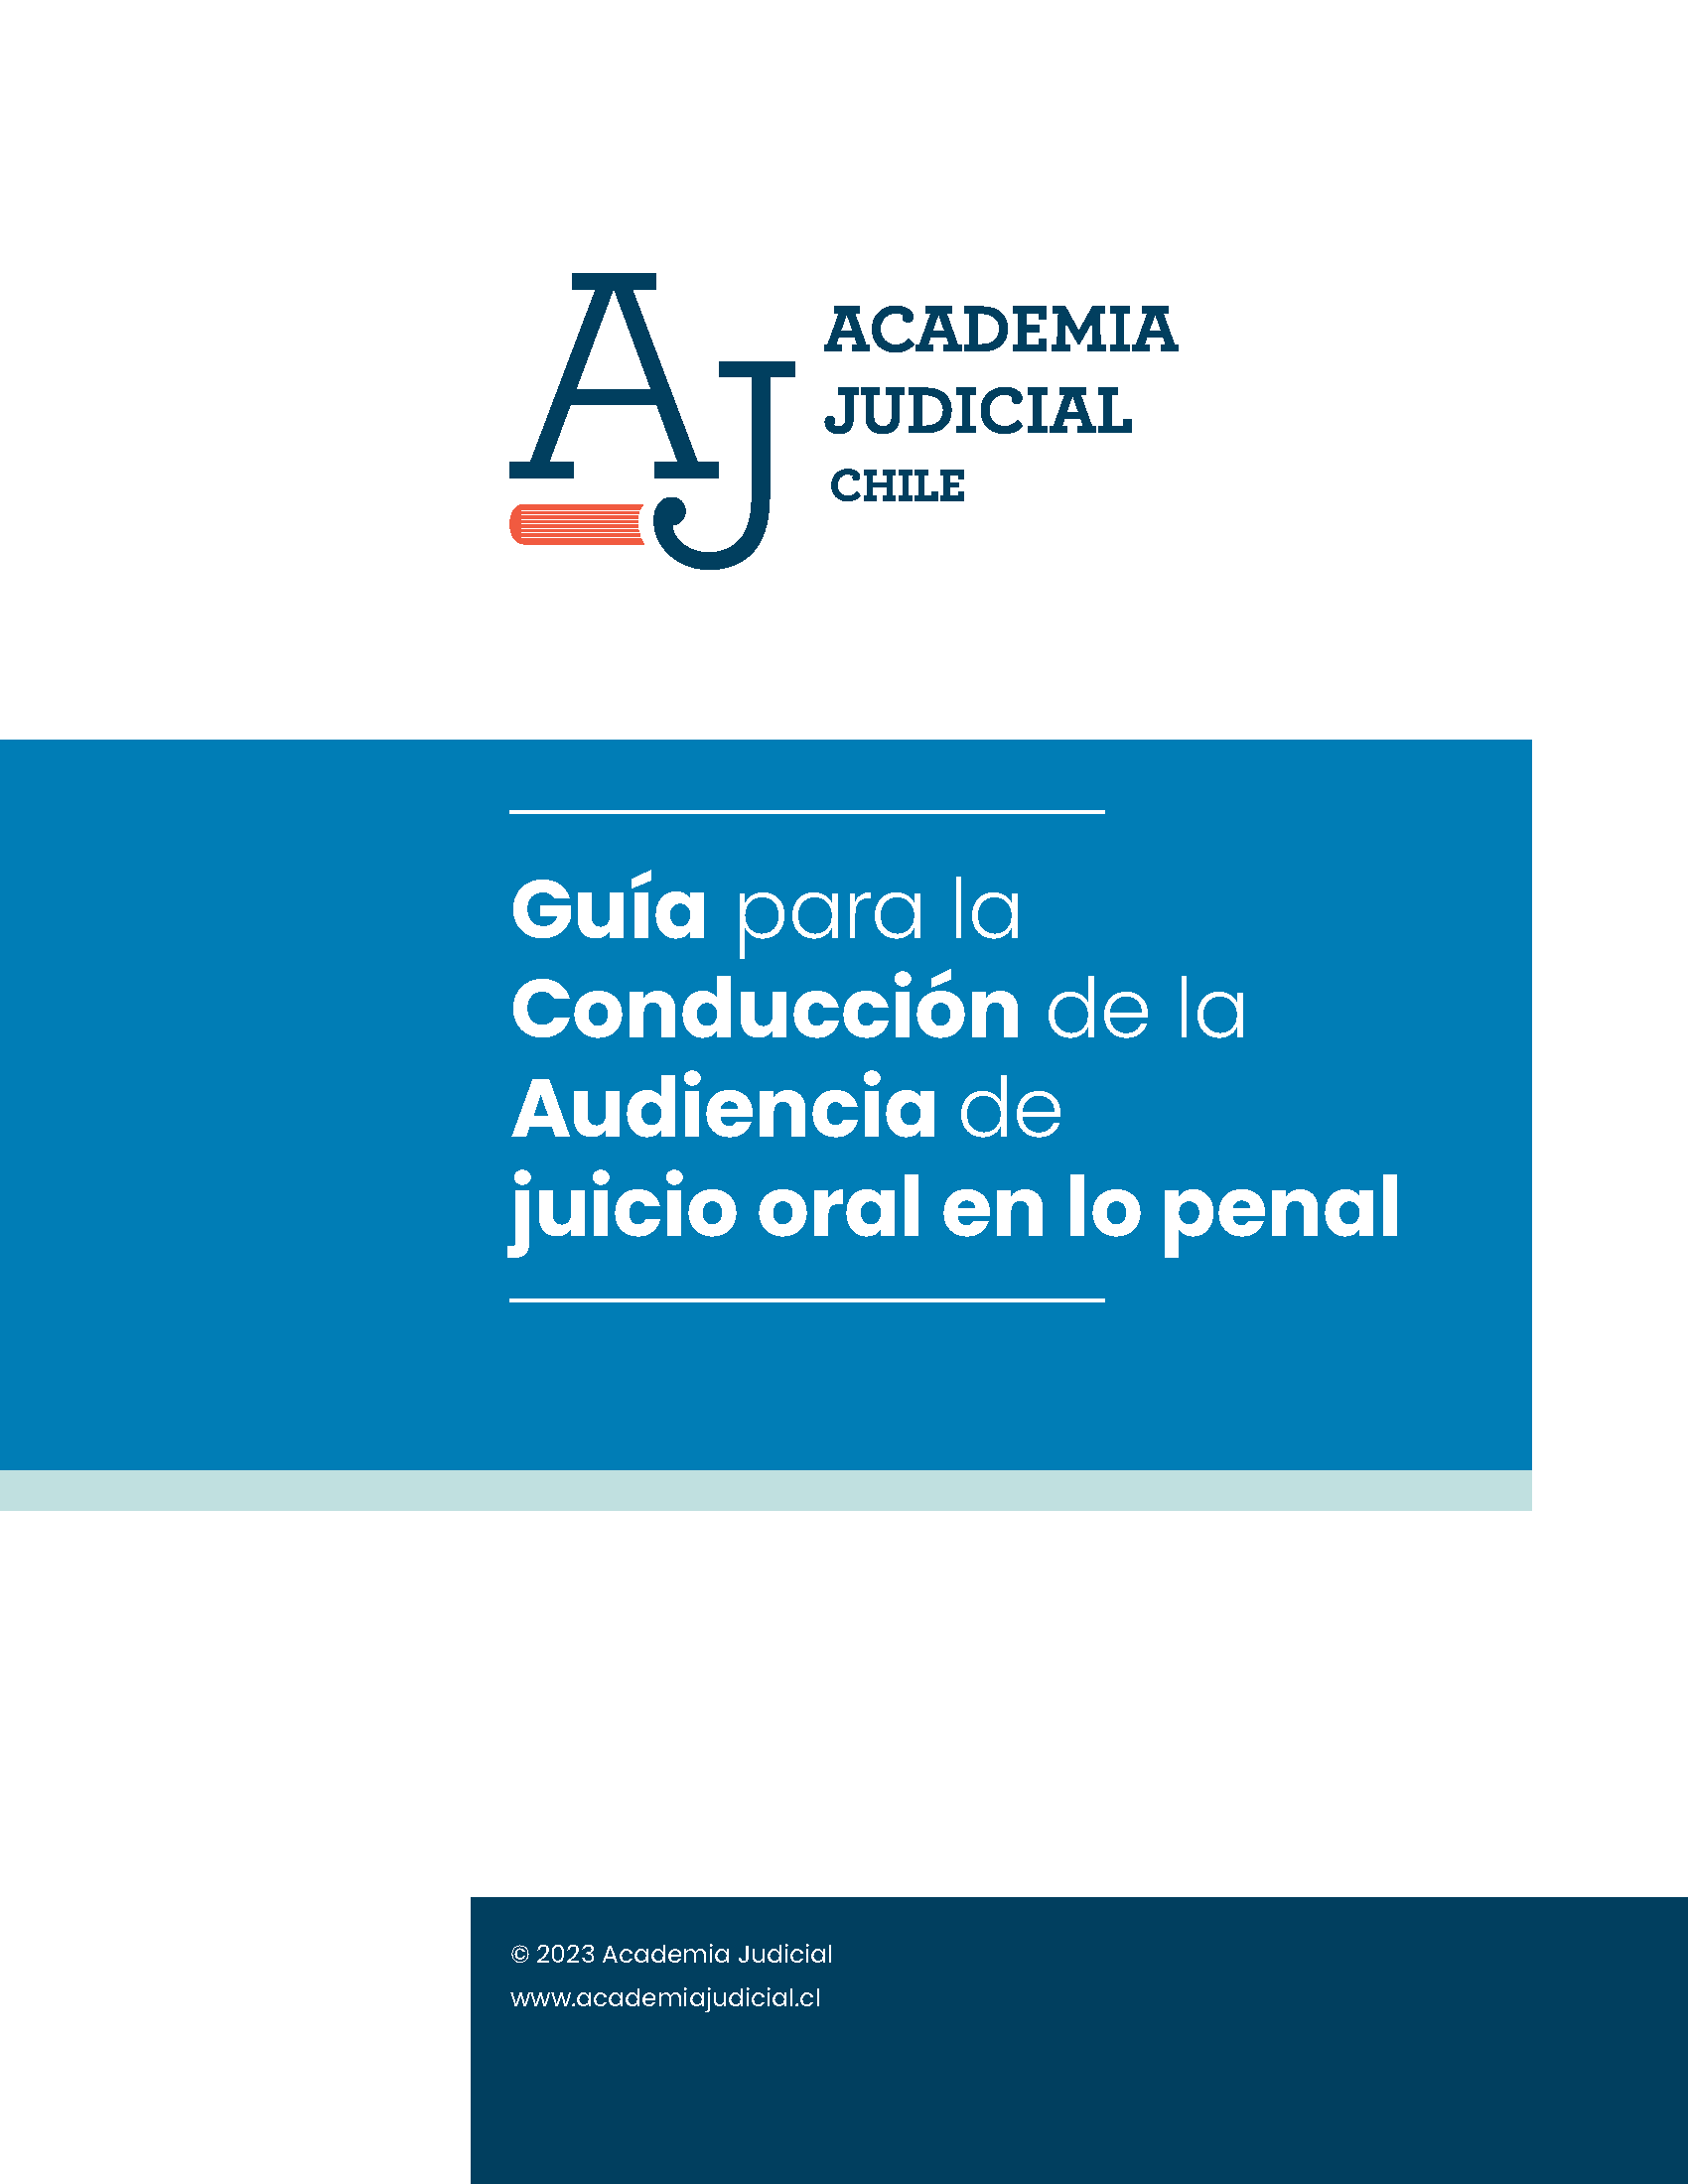 Guía para la conducción de la audiencia de juicio oral en lo penal. En elaboración.